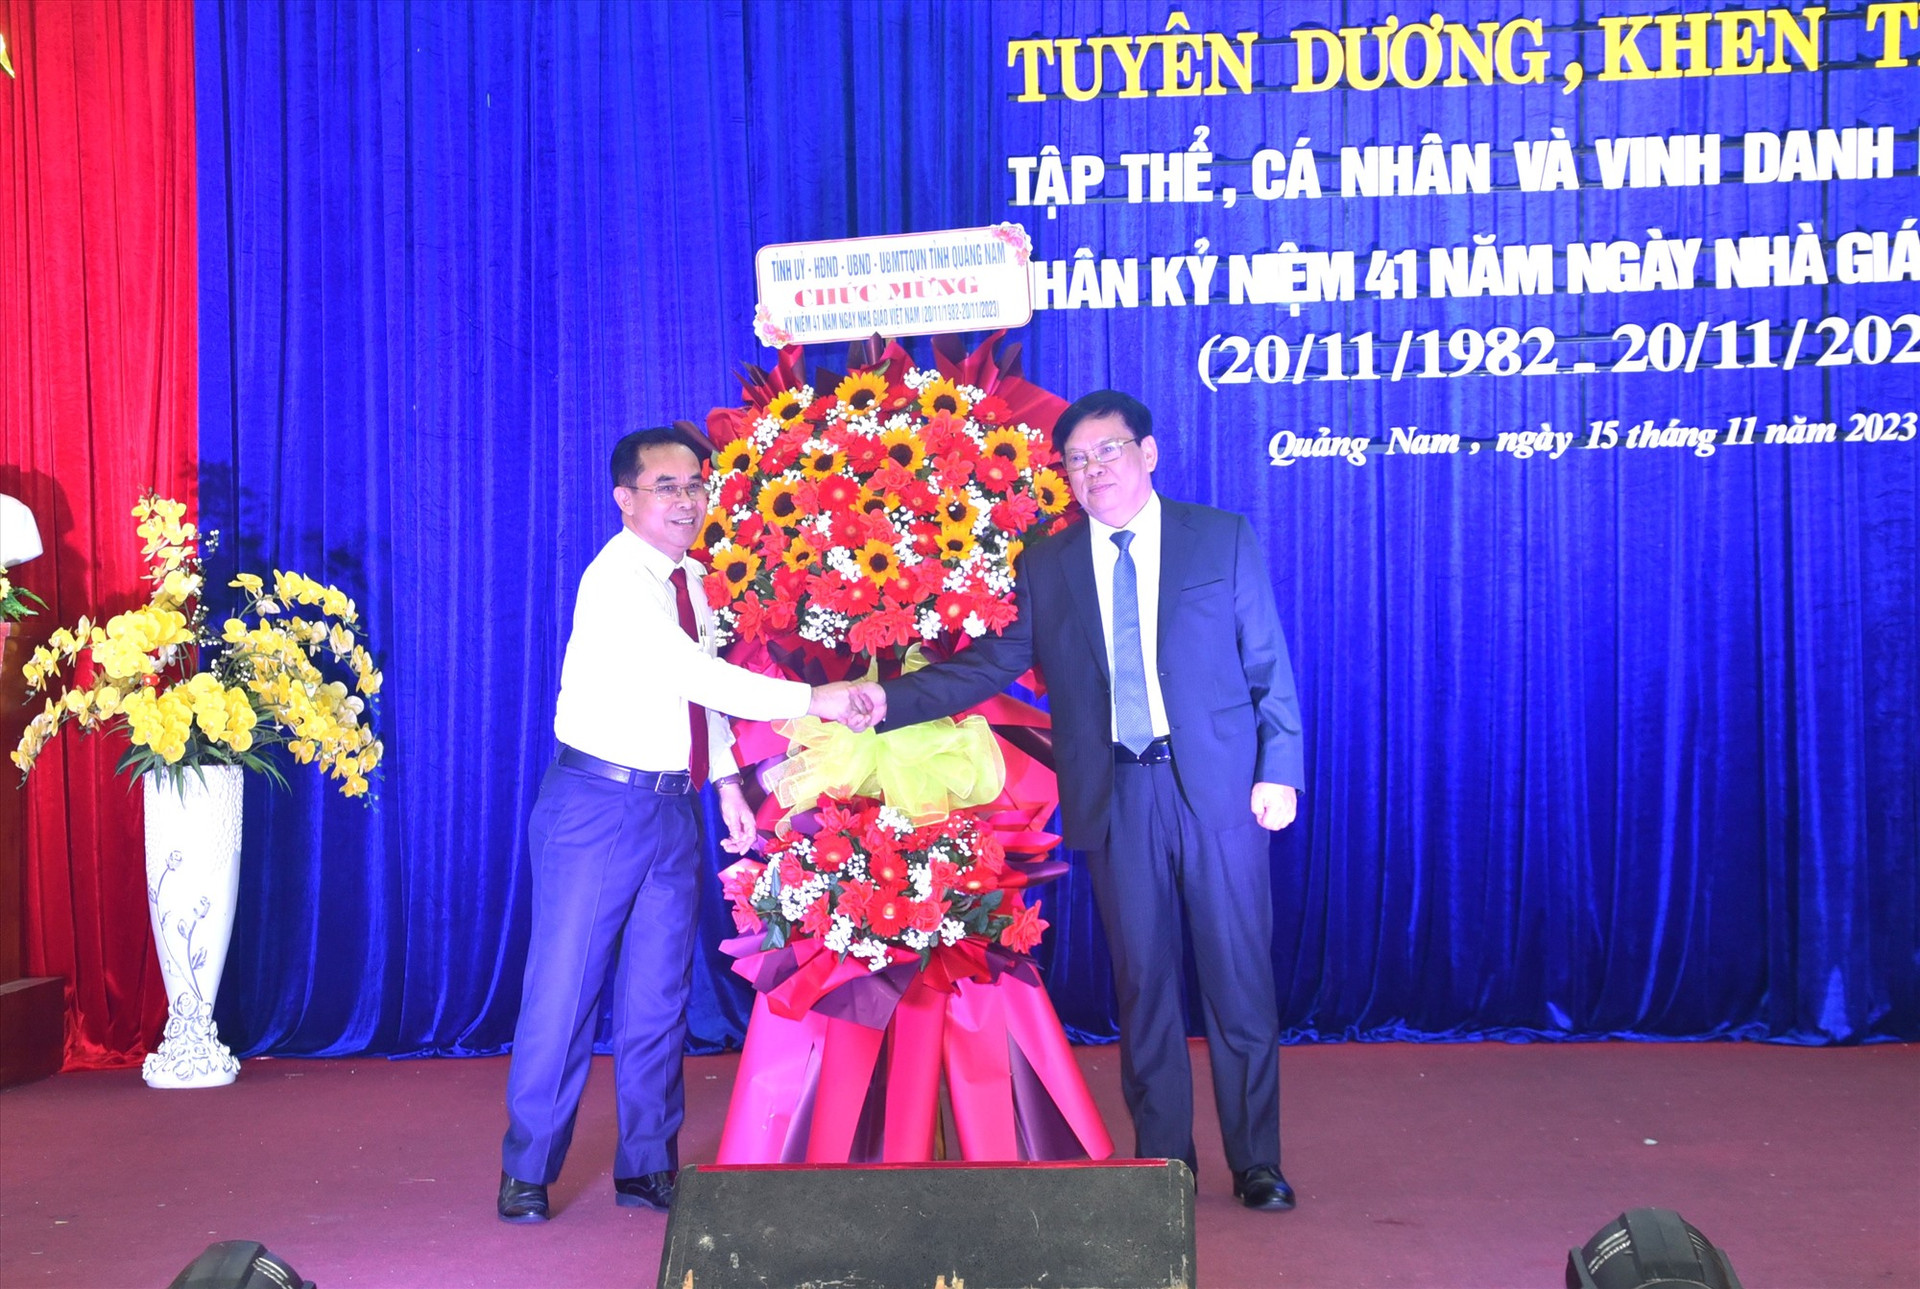 Phó Chủ tịch UBND tỉnh Trần Anh Tuấn tặng hoa cho Sở GD-ĐT nhân lễ tuyên dương và kỷ niệm ngày Nhà giáo Việt Nam. Ảnh: X.P